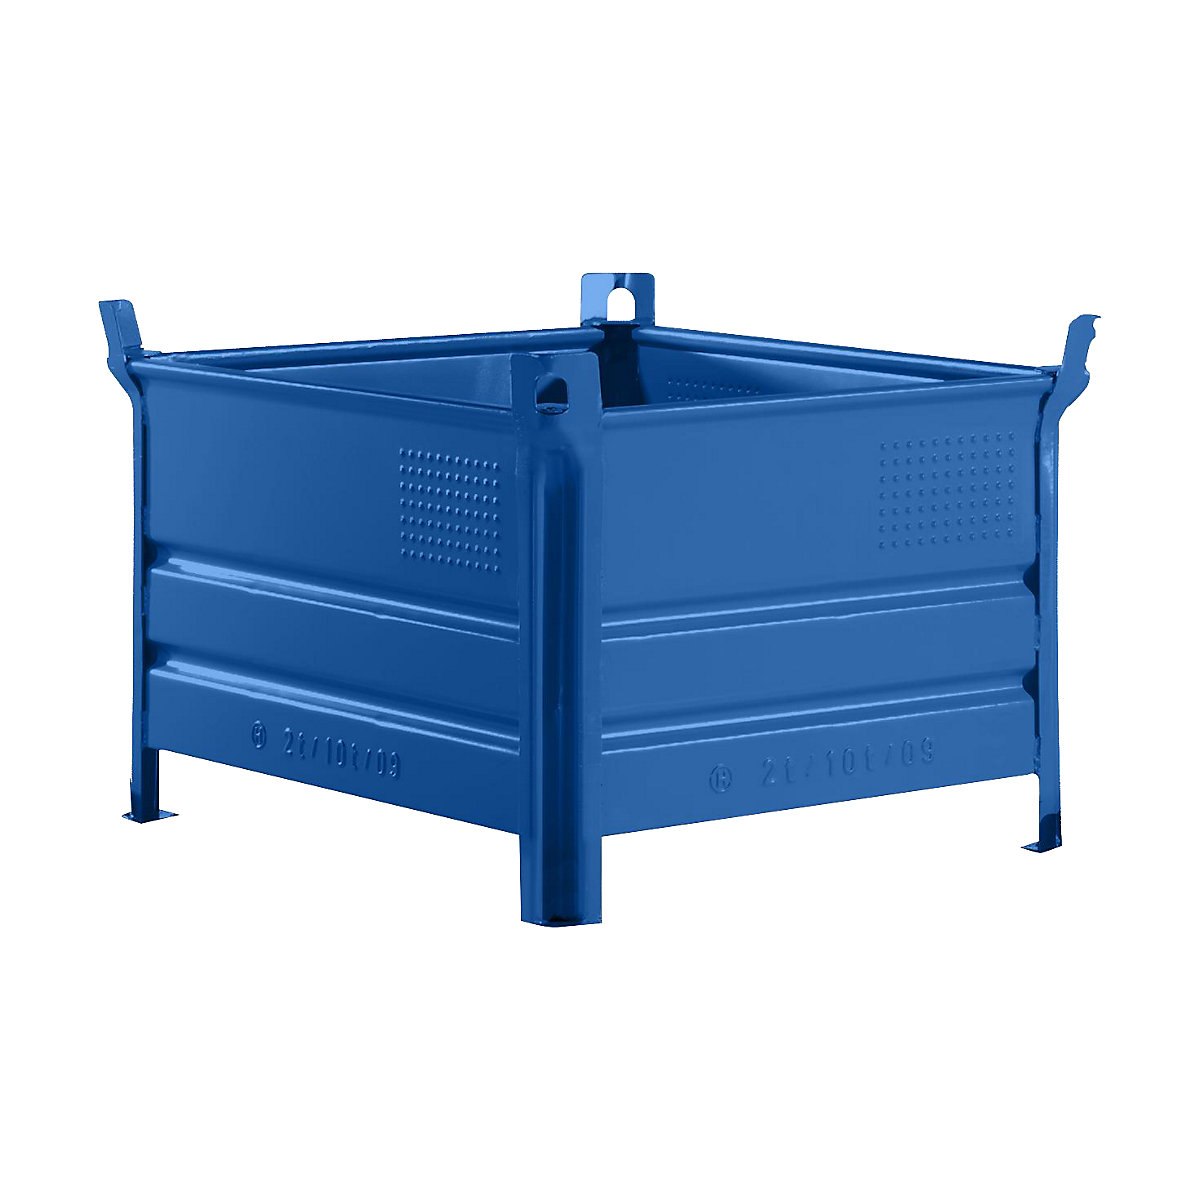 Teli falú rakásolható tároló – Heson, szé x h 800 x 1000 mm, teherbírás 500 kg, kék, 1 db-tól-5